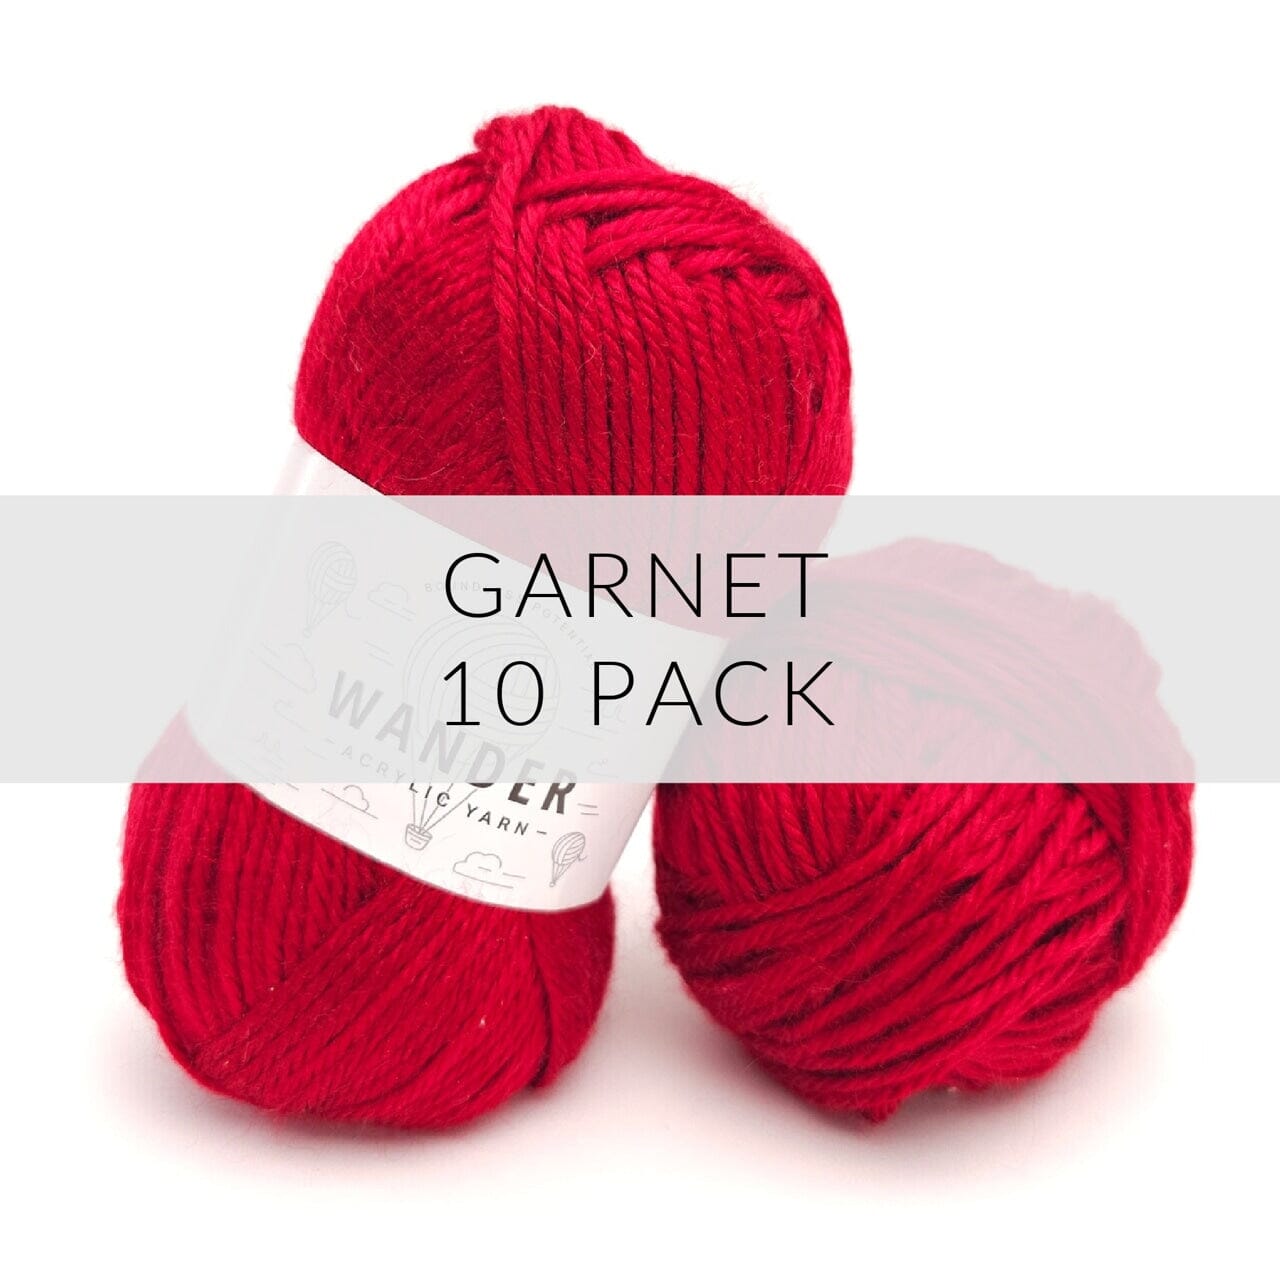 10 Pack Wander Acrylic Yarn Yarn FurlsCrochet Garnet 